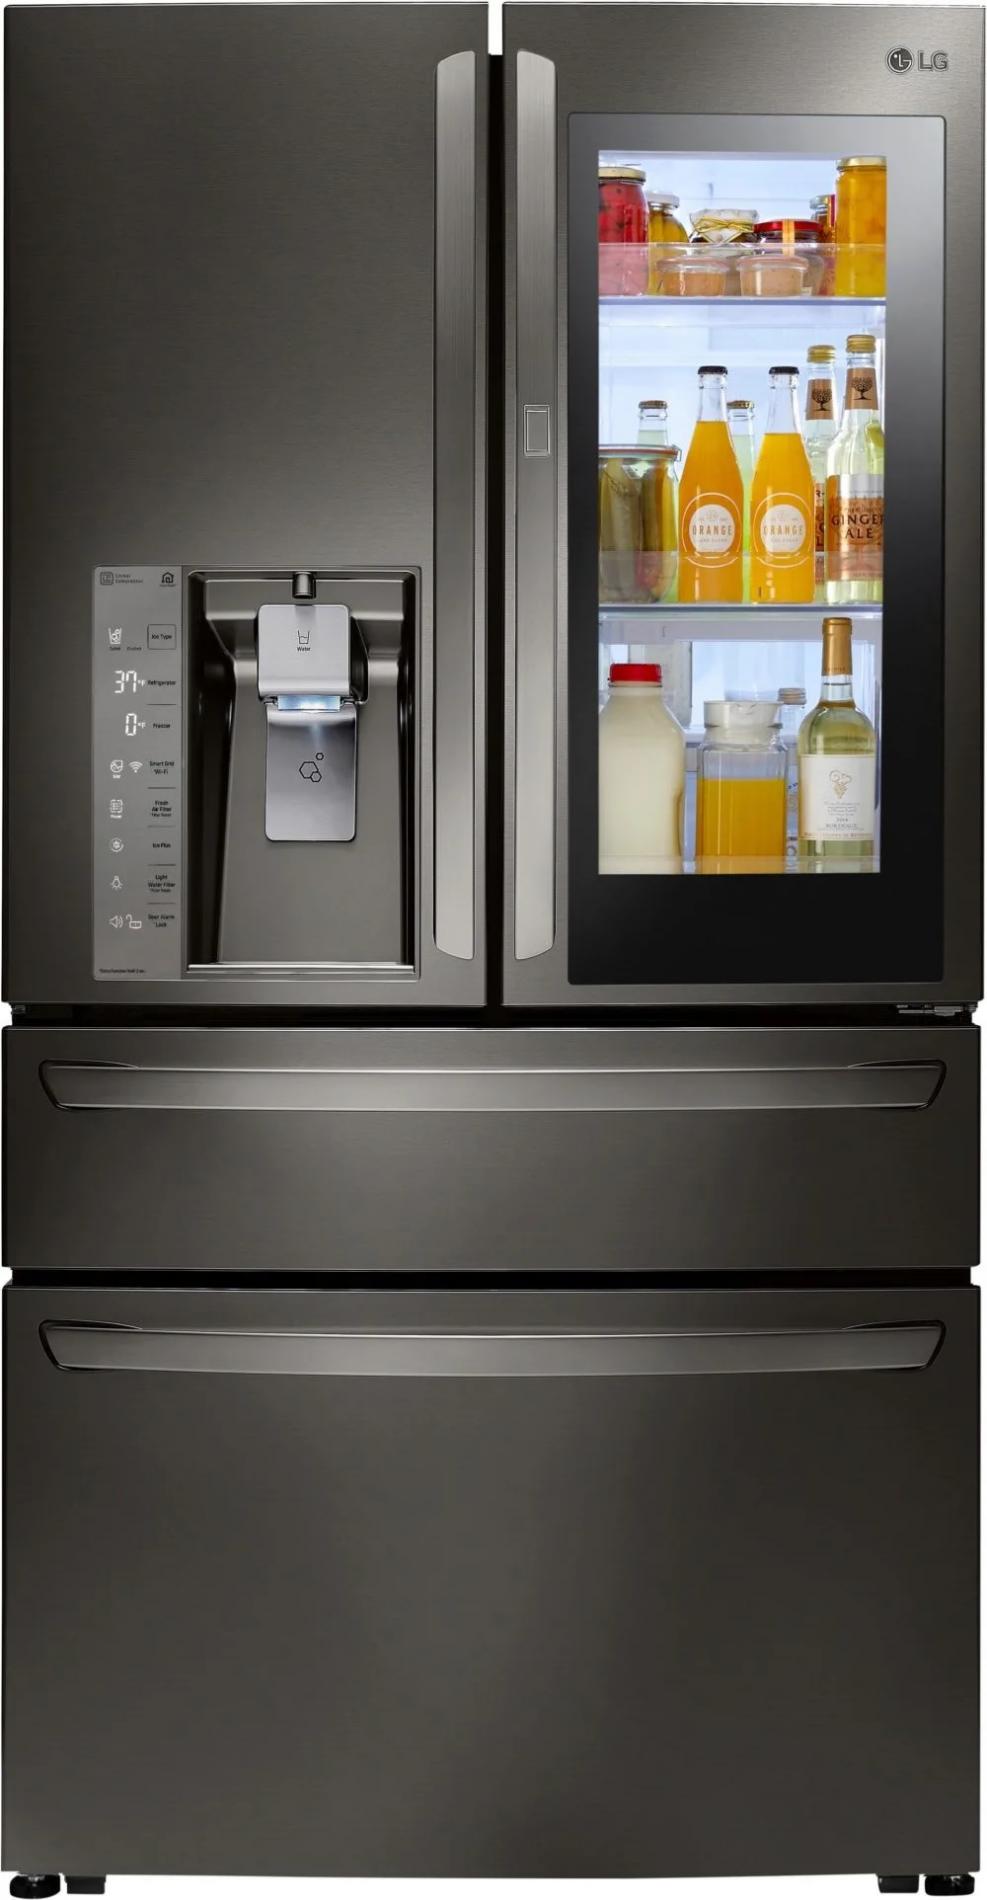 Рембытхолод ремонтирует холодильники LG Signature